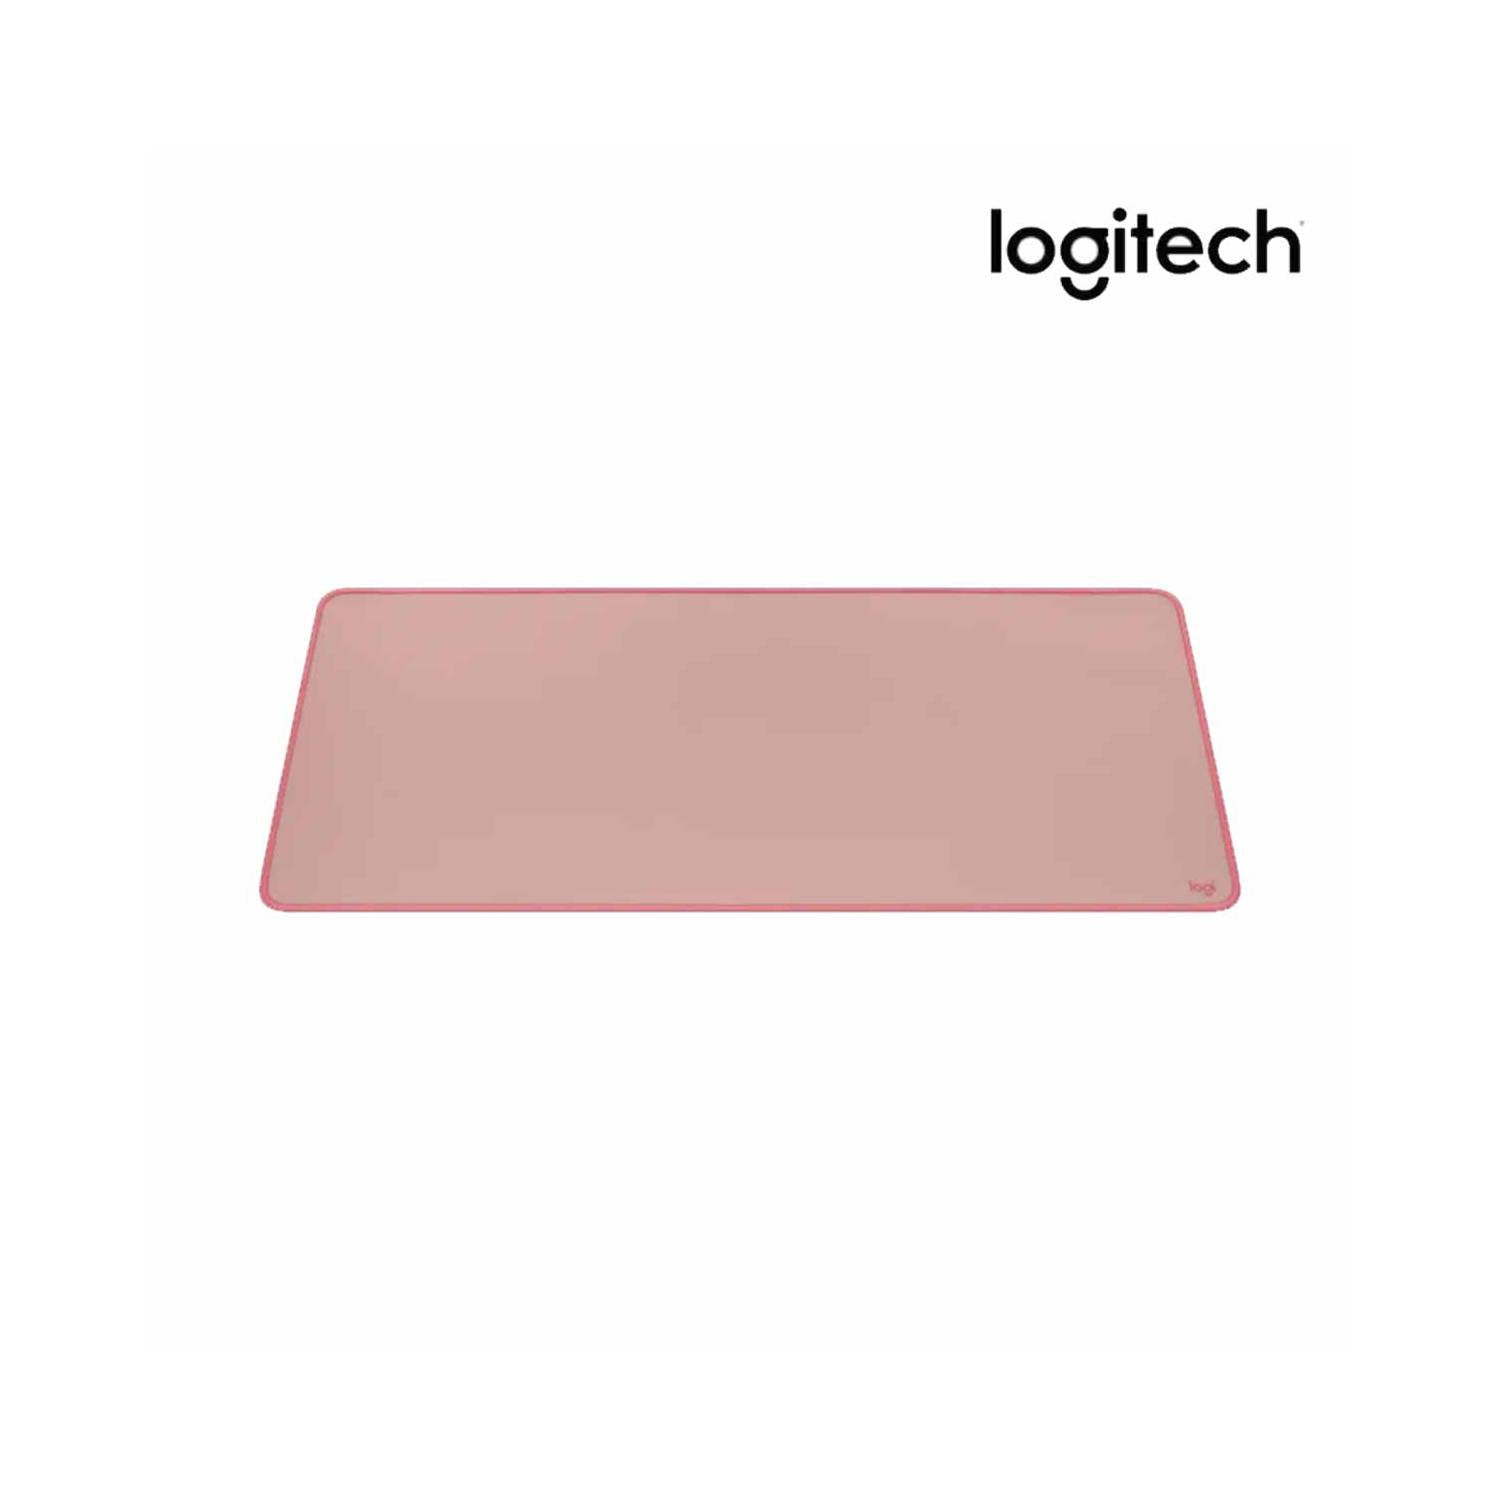 Mousepad Desk Mat Logitech Pink